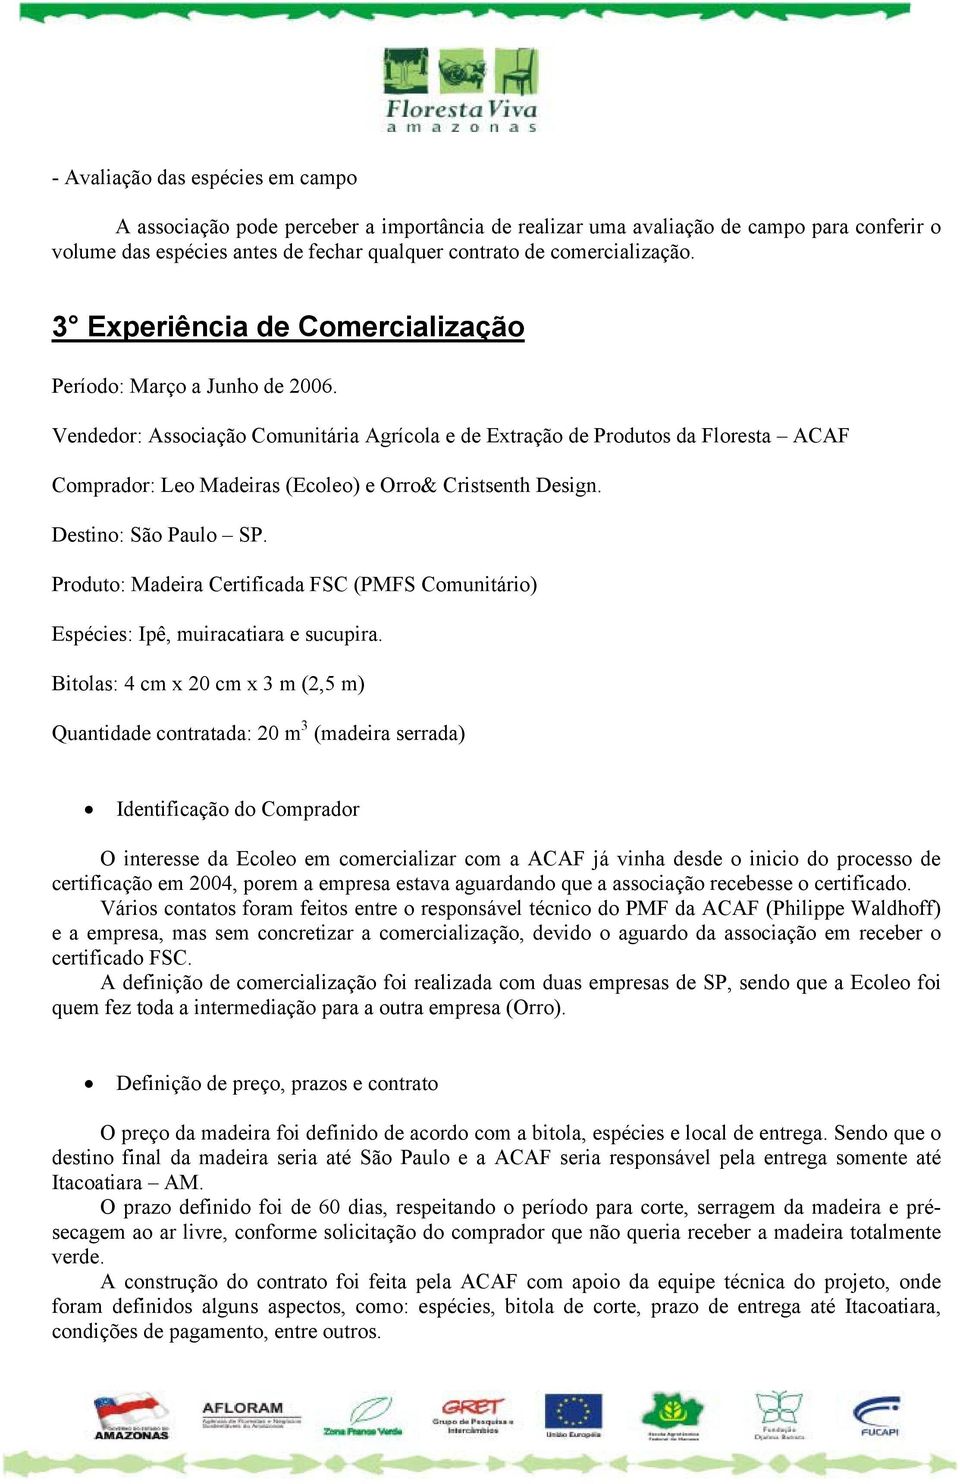 Vendedor: Associação Comunitária Agrícola e de Extração de Produtos da Floresta ACAF Comprador: Leo Madeiras (Ecoleo) e Orro& Cristsenth Design. Destino: São Paulo SP.